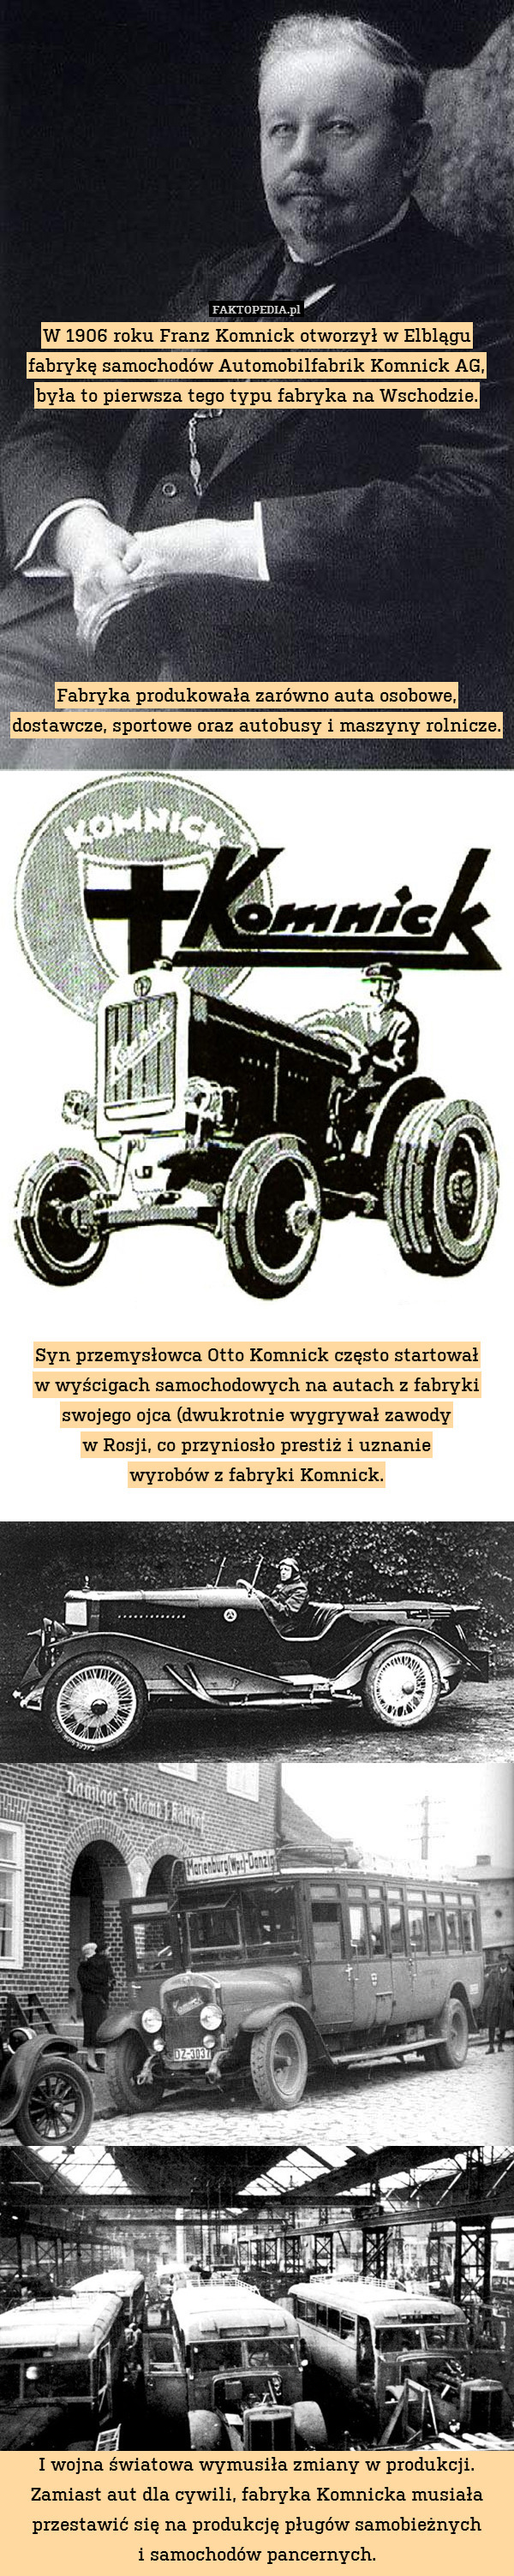 W 1906 roku Franz Komnick otworzył w Elblągu fabrykę samochodów Automobilfabrik Komnick AG, była to pierwsza tego typu fabryka na Wschodzie.









Fabryka produkowała zarówno auta osobowe, dostawcze, sportowe oraz autobusy i maszyny rolnicze. 




















Syn przemysłowca Otto Komnick często startował
w wyścigach samochodowych na autach z fabryki swojego ojca (dwukrotnie wygrywał zawody
w Rosji, co przyniosło prestiż i uznanie
wyrobów z fabryki Komnick.
































I wojna światowa wymusiła zmiany w produkcji. Zamiast aut dla cywili, fabryka Komnicka musiała przestawić się na produkcję pługów samobieżnych
i samochodów pancernych. 